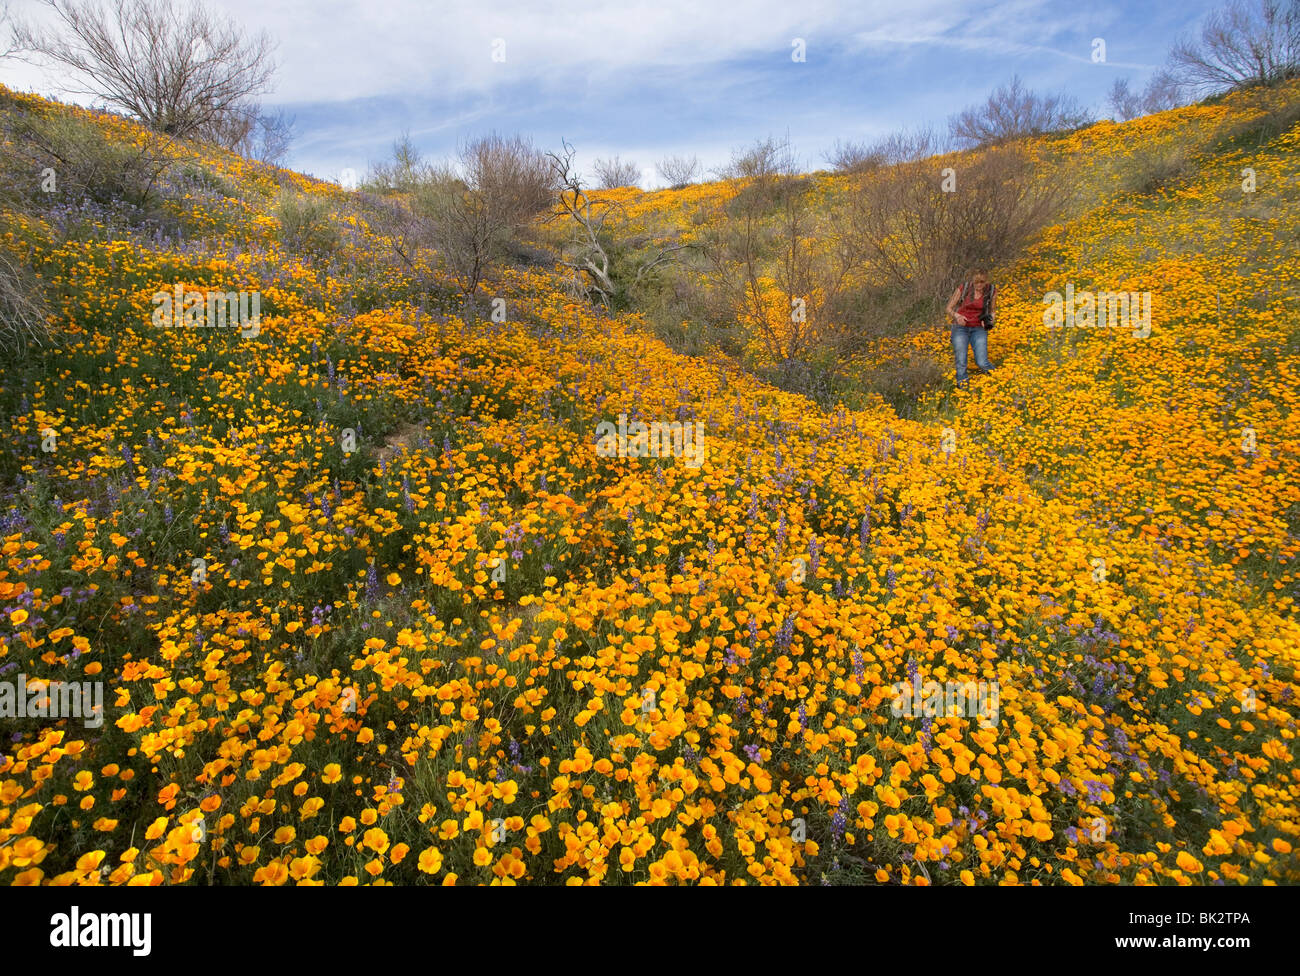 Ein großes Feld von Orangen und gelben Mohn und Wildblumen, das auf ewig geht. Eine Frau Fotograf geht unter ihnen. Stockfoto